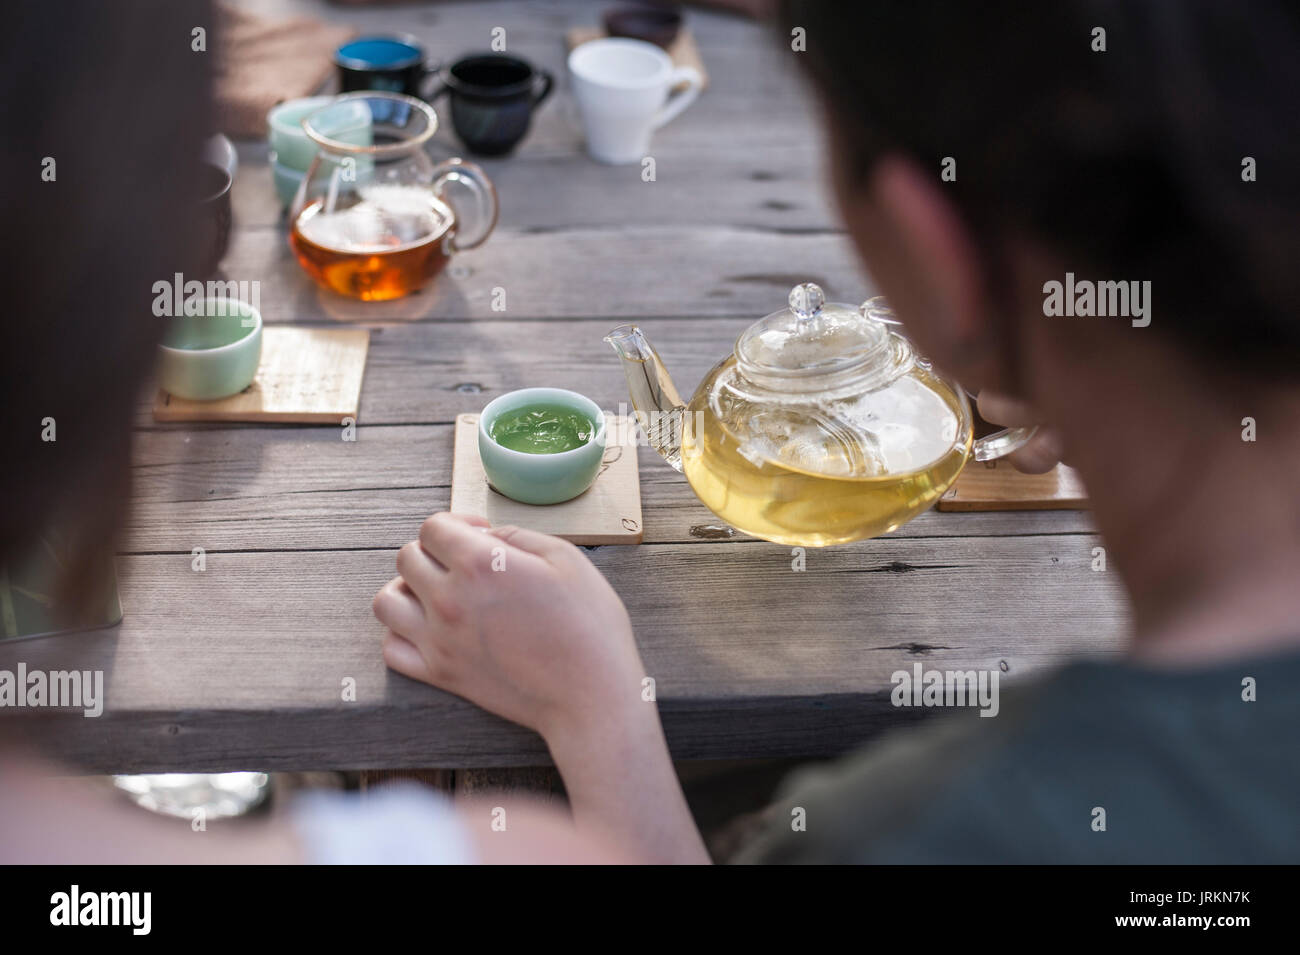 La cérémonie du thé Chinois traditionnel - woman holding glass tea pot verser en tasse de thé vert chinois Banque D'Images